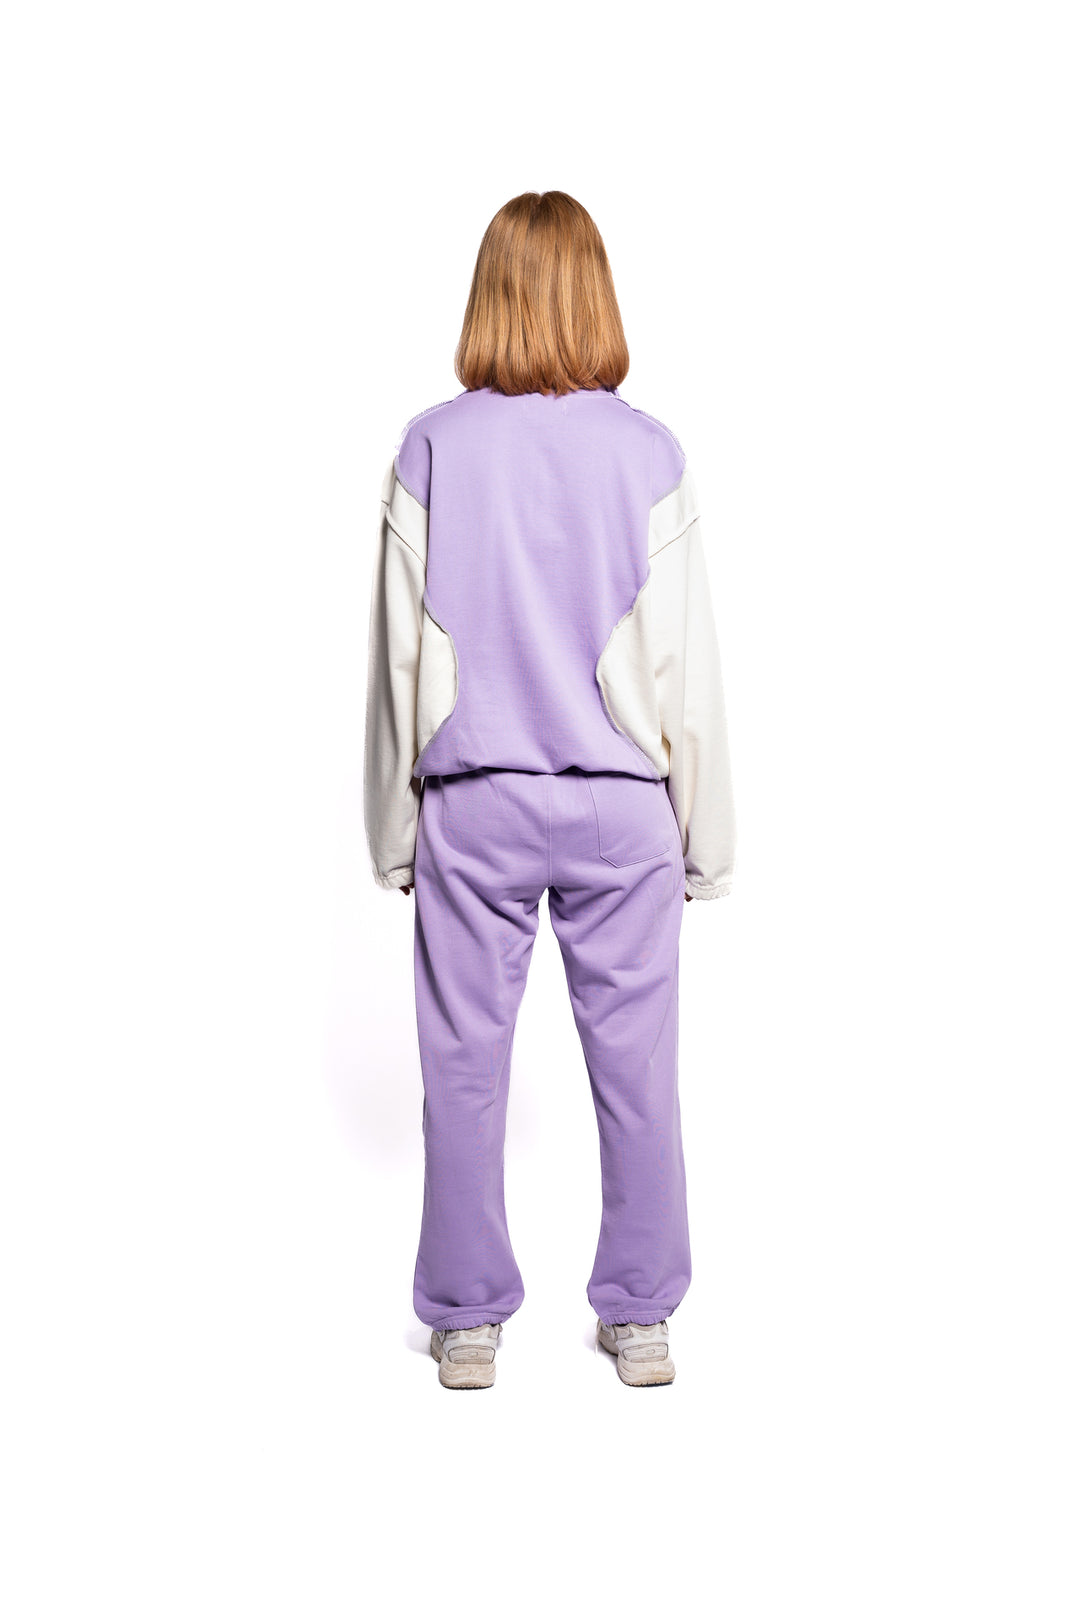 Rückansicht einer Frau in Decider pastell-lila Jogginghose mit Hosentasche, die Bequemlichkeit und modischen Anspruch in Einklang bringt.